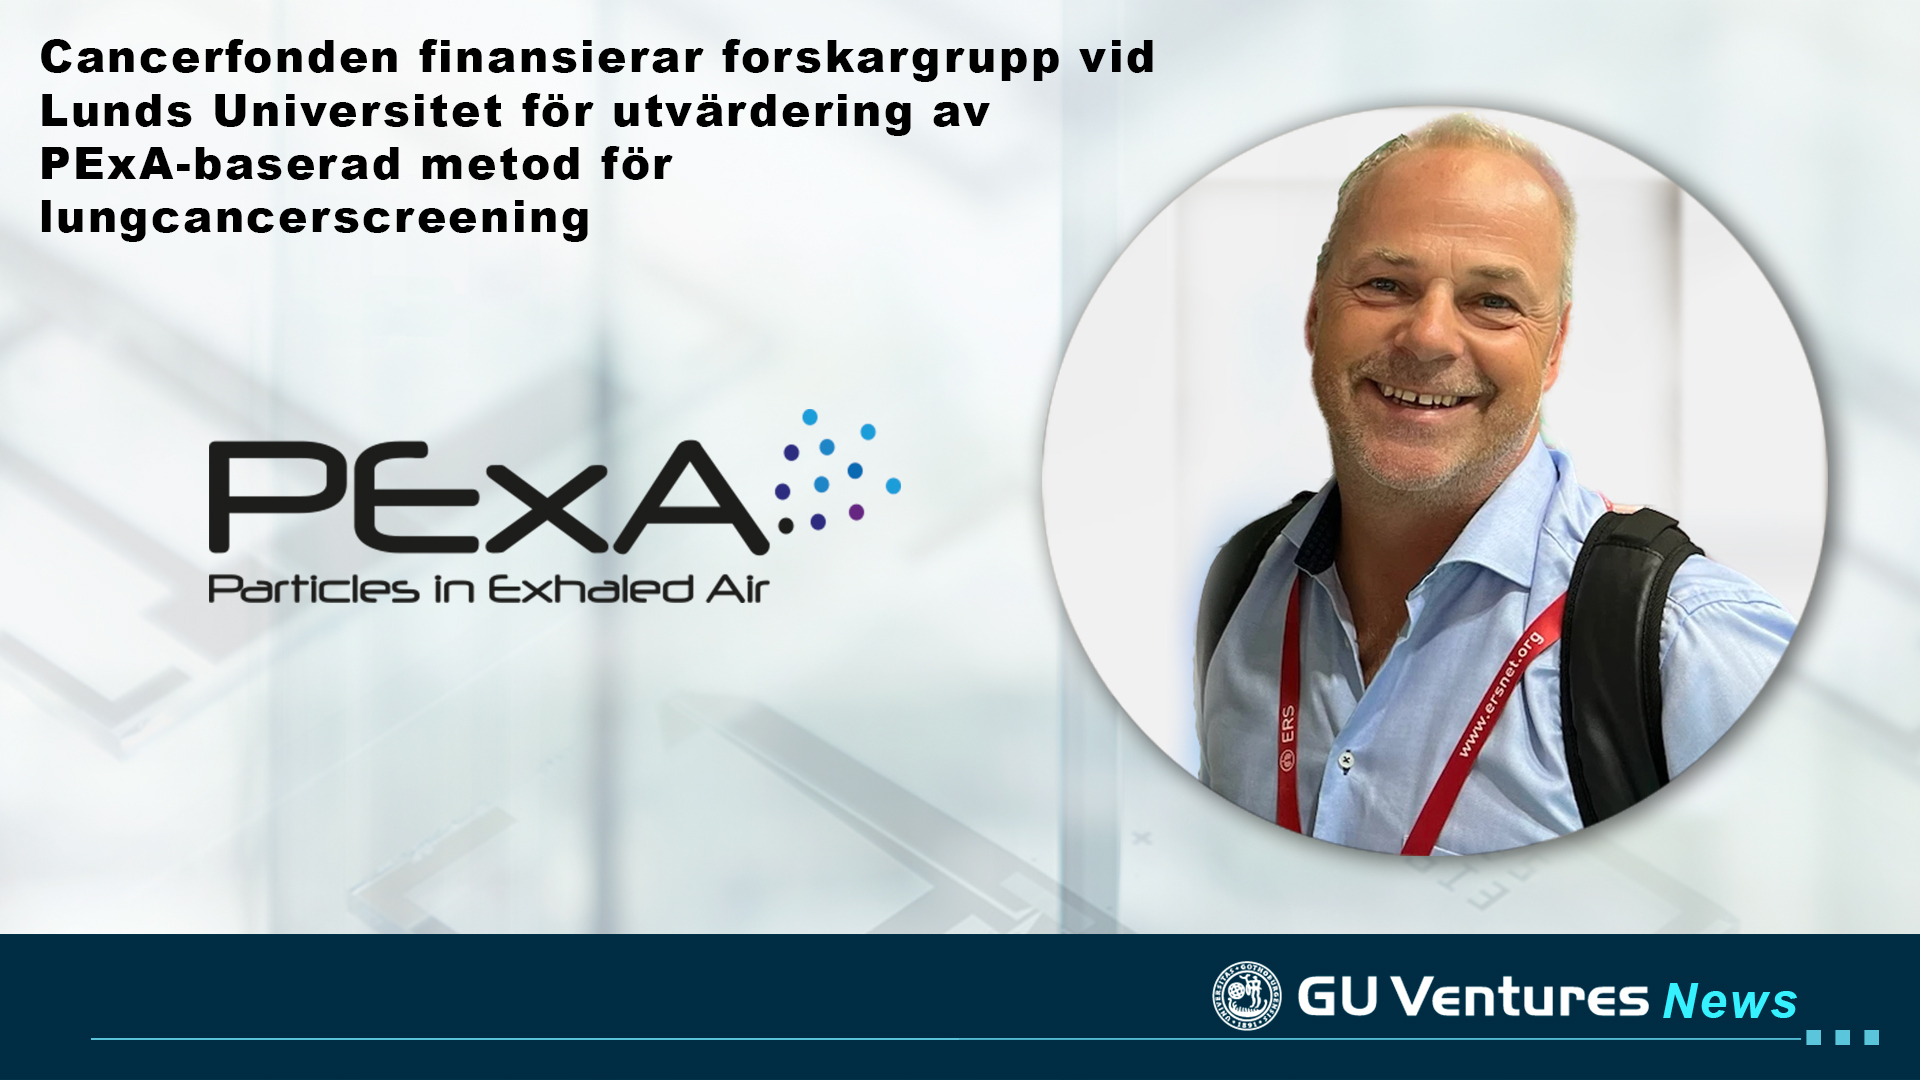 Cancerfonden finansierar forskargrupp vid Lunds Universitet för utvärdering av PExA-baserad metod för lungcancerscreening